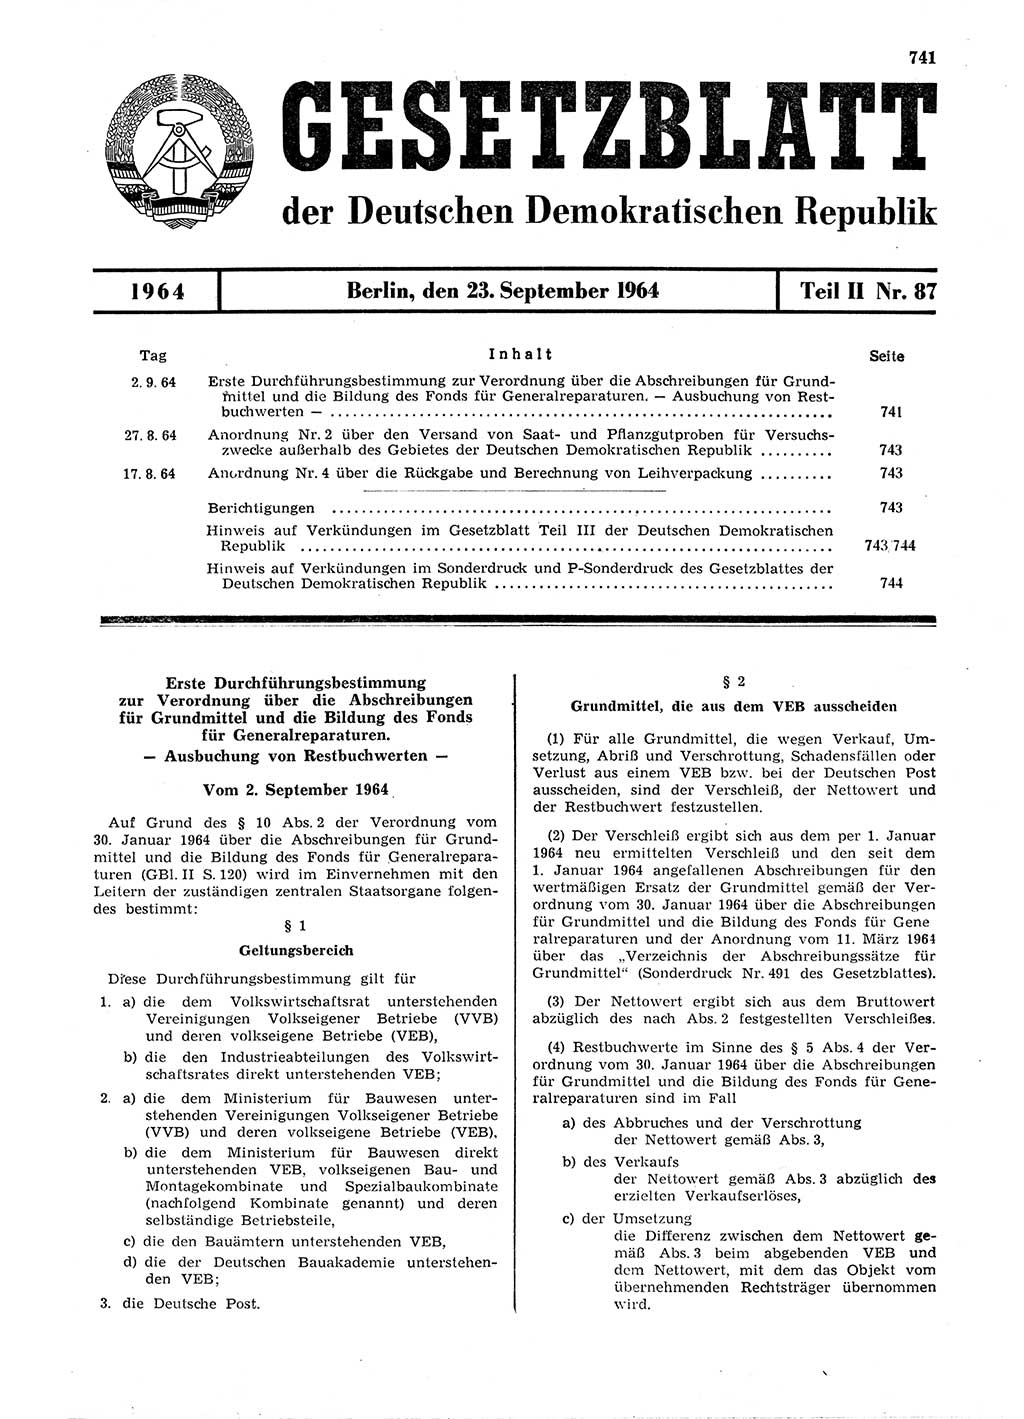 Gesetzblatt (GBl.) der Deutschen Demokratischen Republik (DDR) Teil ⅠⅠ 1964, Seite 741 (GBl. DDR ⅠⅠ 1964, S. 741)